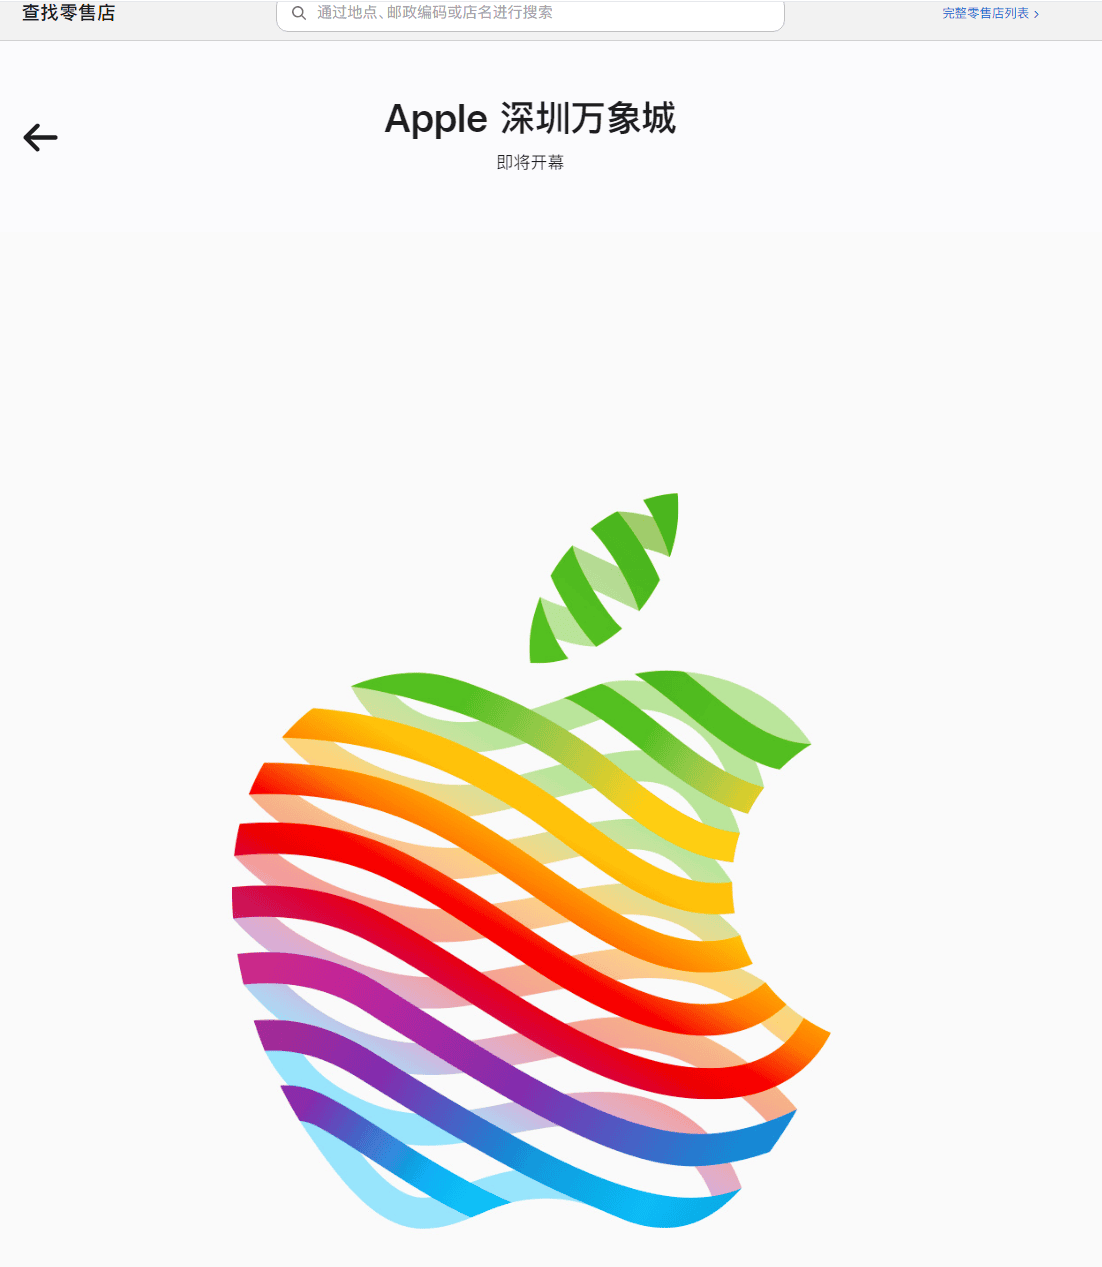 苹果官网显示：深圳万象城 Apple Store 即将开幕